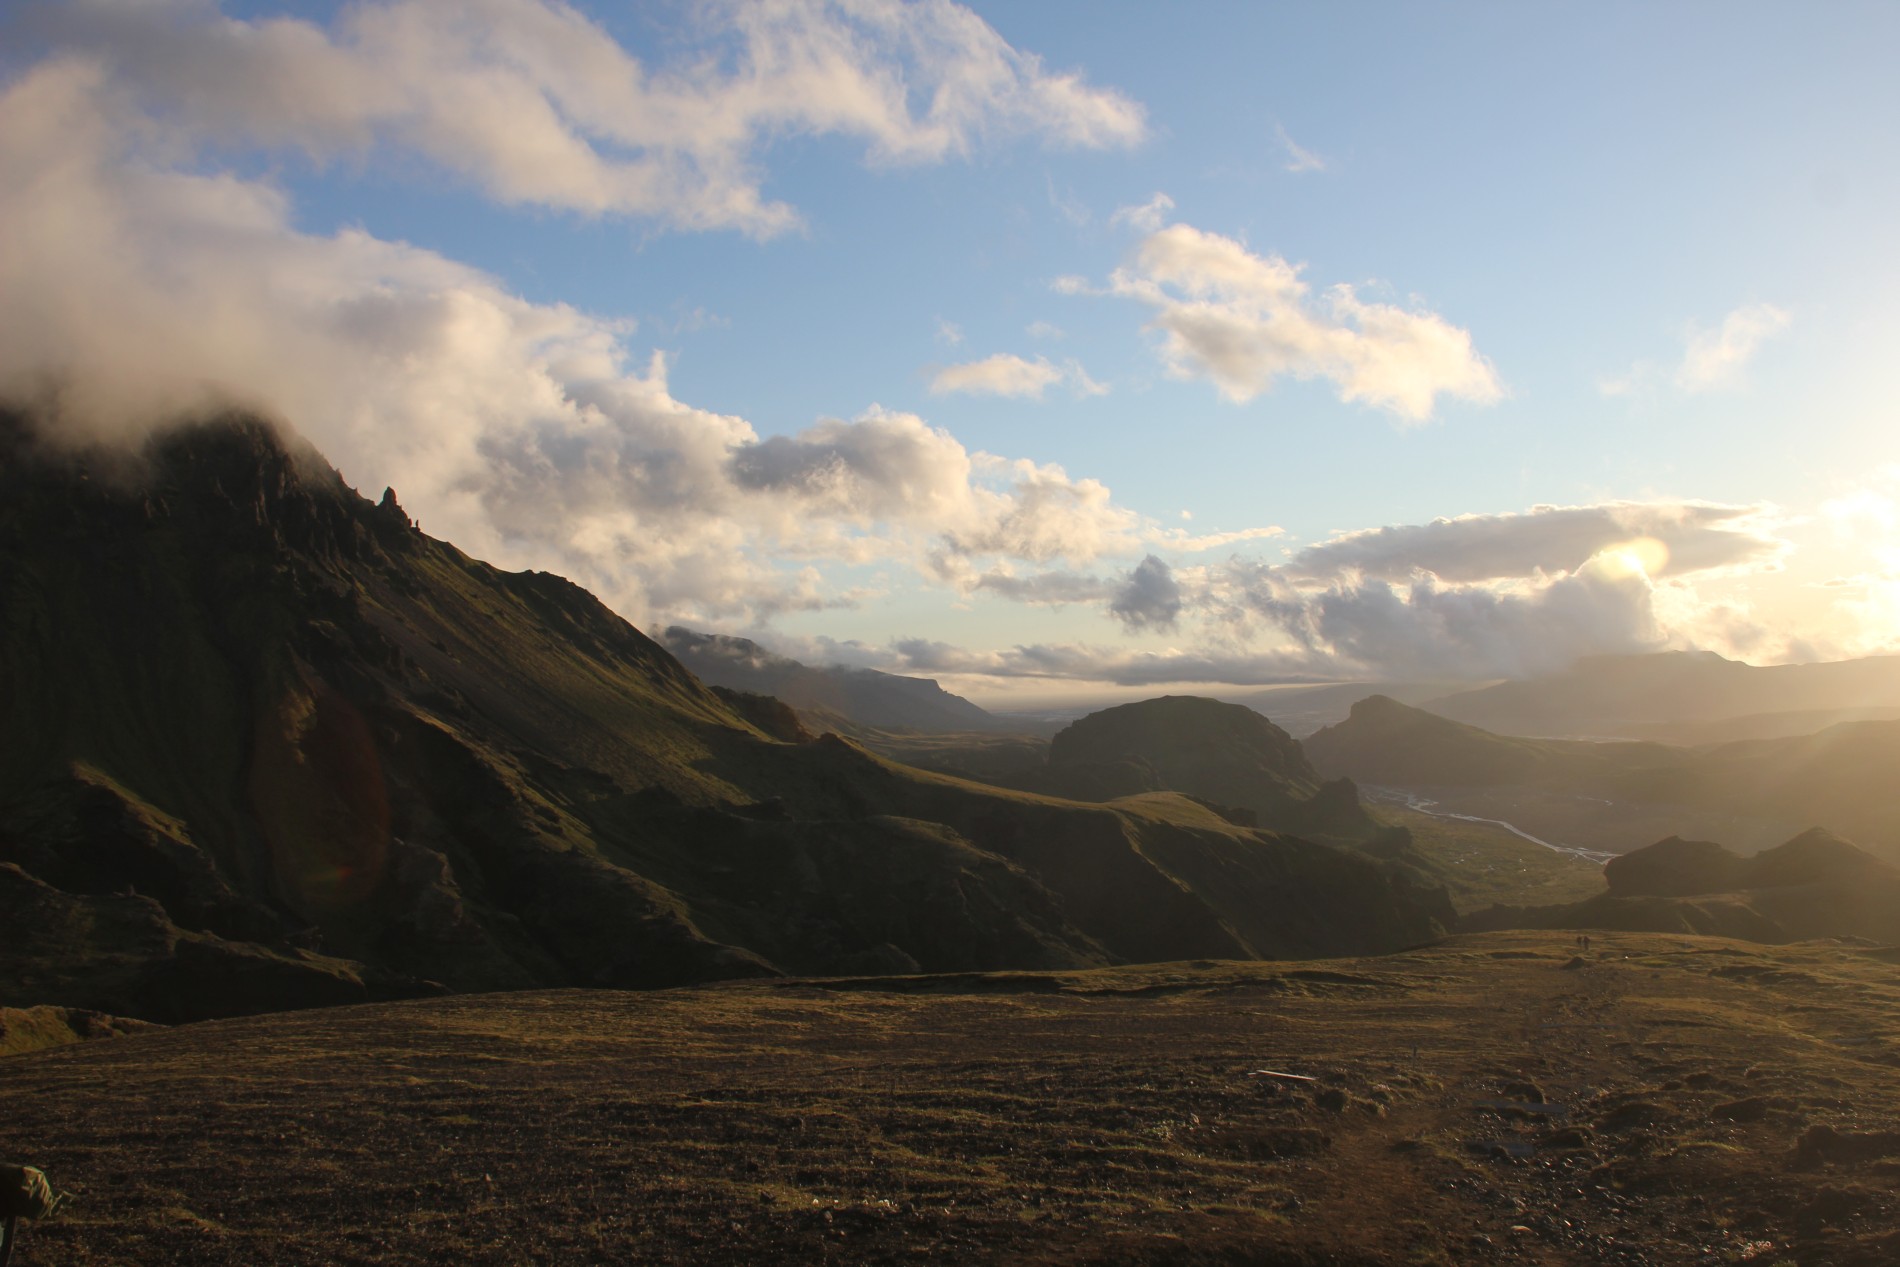 The mountains of Thórsmörk look like an imagined, fairy-tale world.